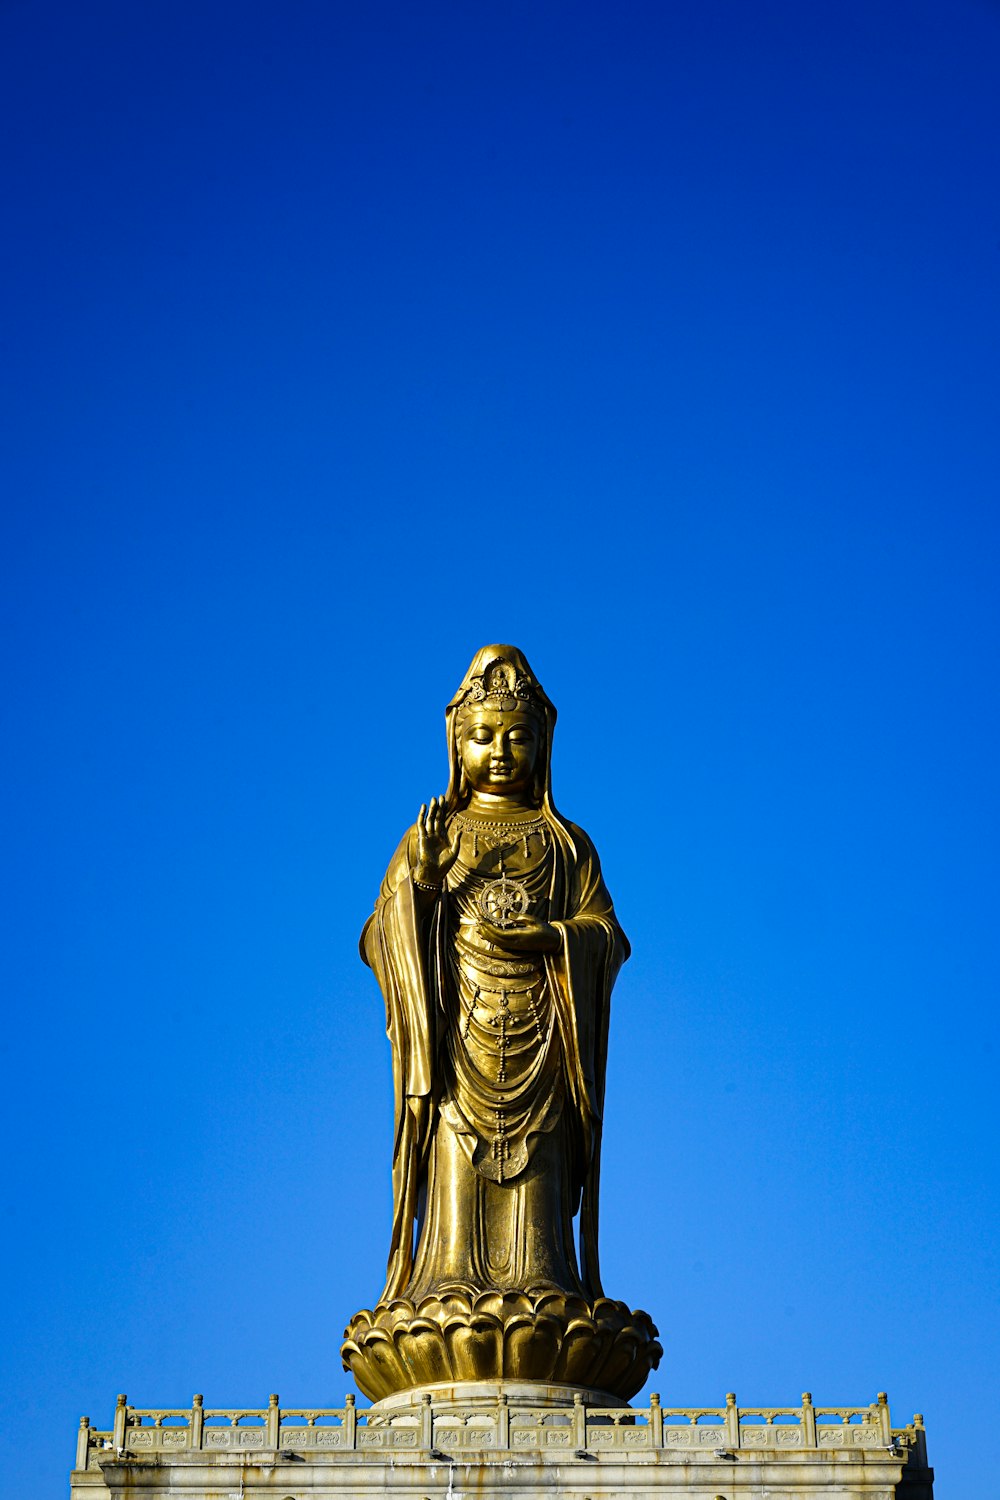 Une statue de Bouddha dorée au sommet d’un bâtiment